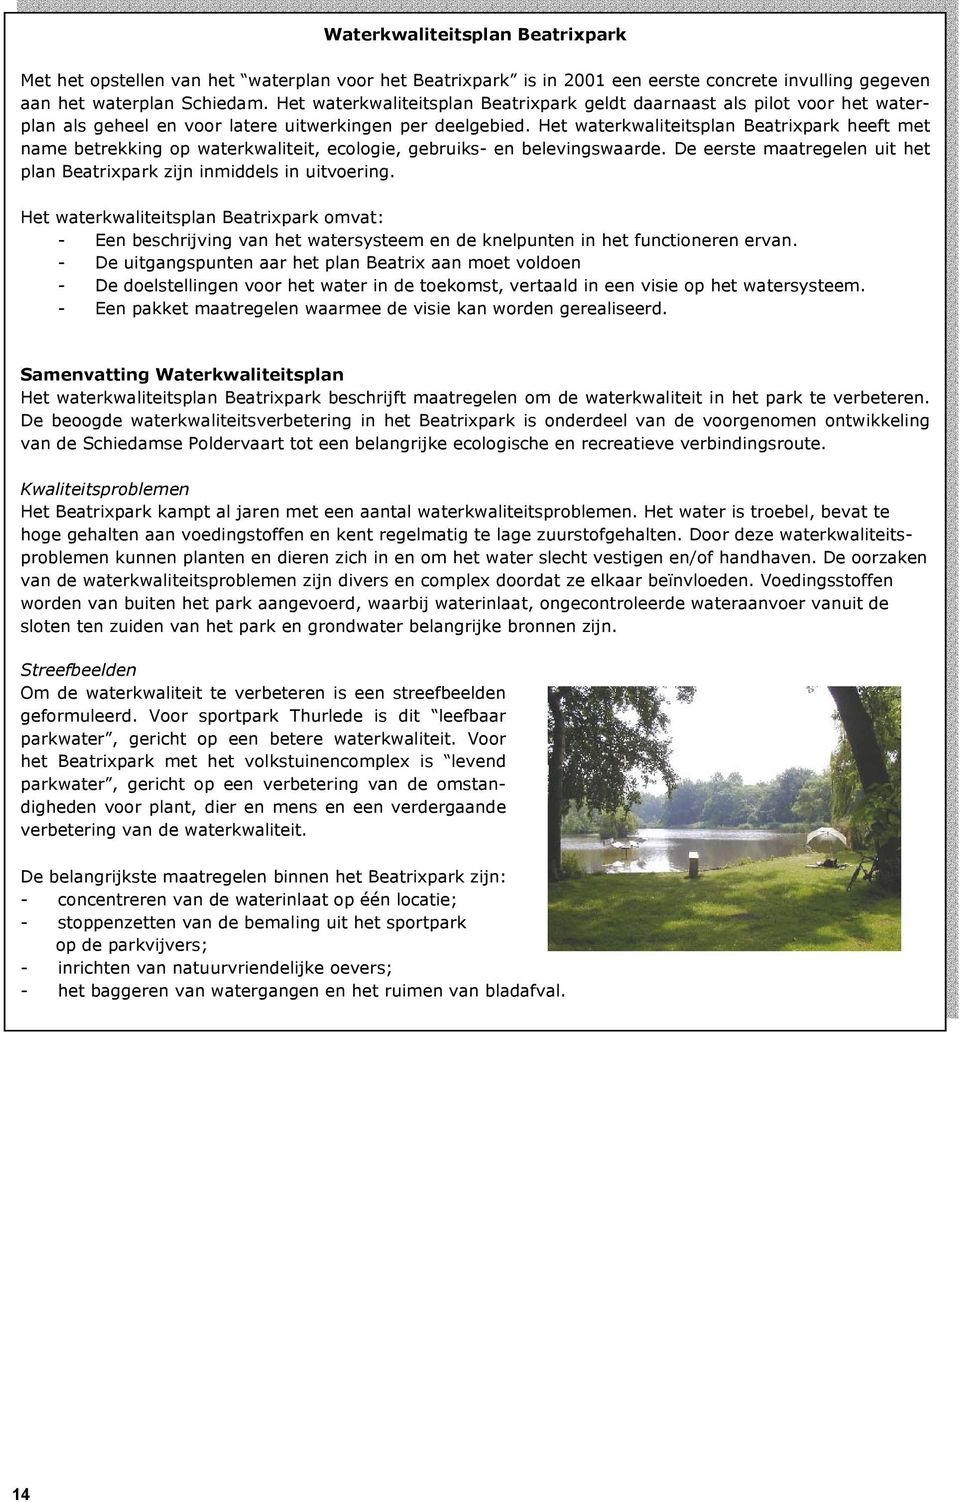 Het waterkwaliteitsplan Beatrixpark heeft met name betrekking op waterkwaliteit, ecologie, gebruiks- en belevingswaarde. De eerste maatregelen uit het plan Beatrixpark zijn inmiddels in uitvoering.